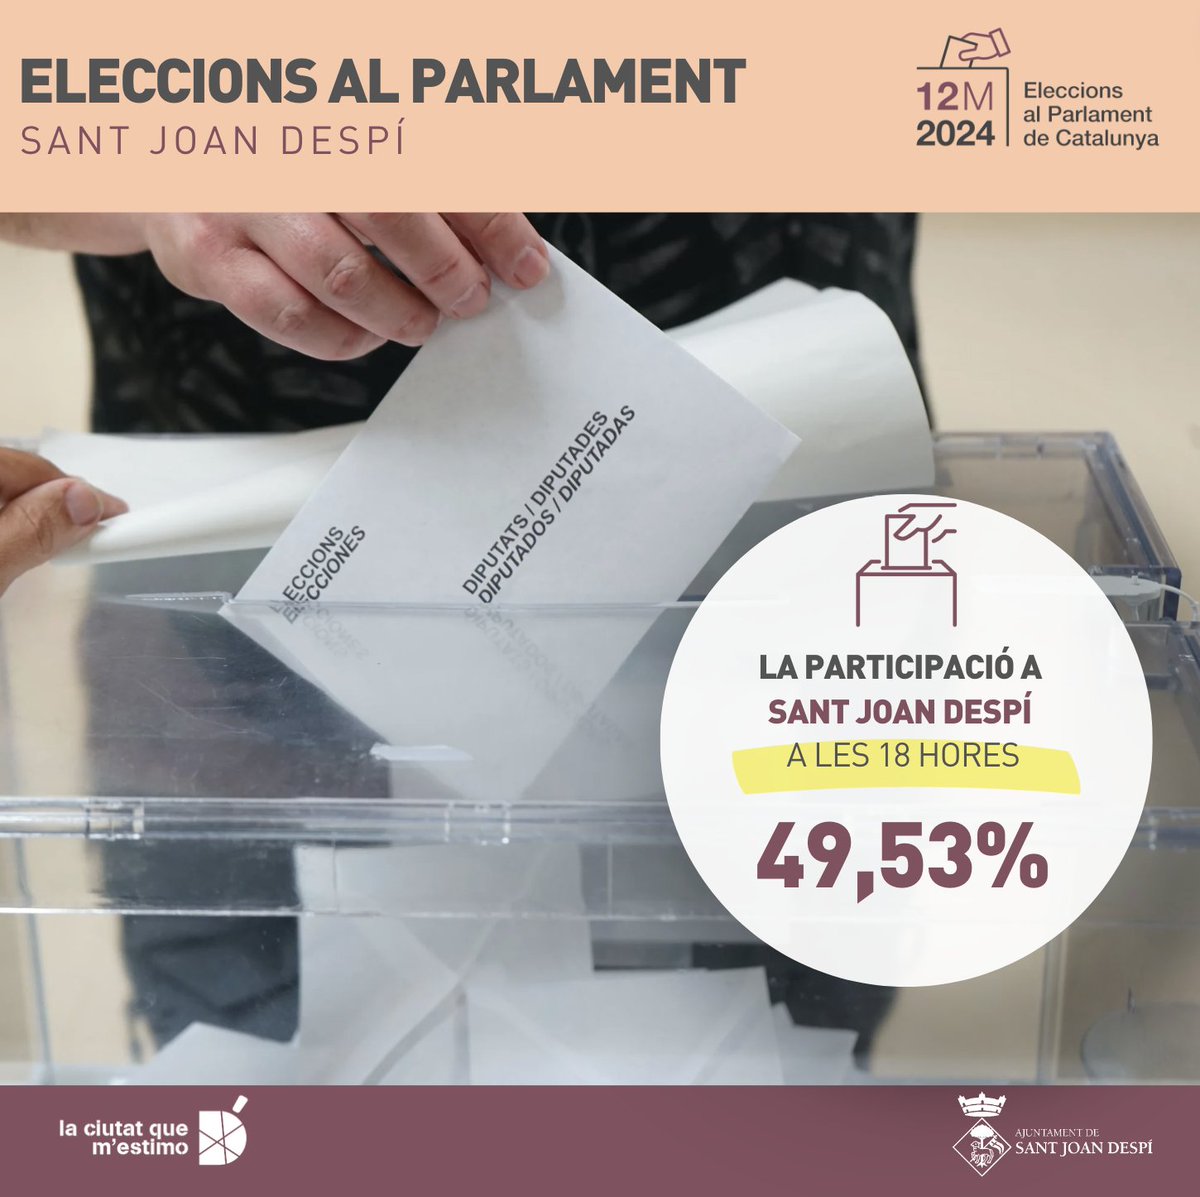 #EleccionsSJD 📩Segon avanç de participació. A les 18 h, a #SantJoanDespí ha votat un 49,53% del cens en les eleccions al Parlament de Catalunya. 

La participació és 0,45 punts més baixa que als comicis de 2021.